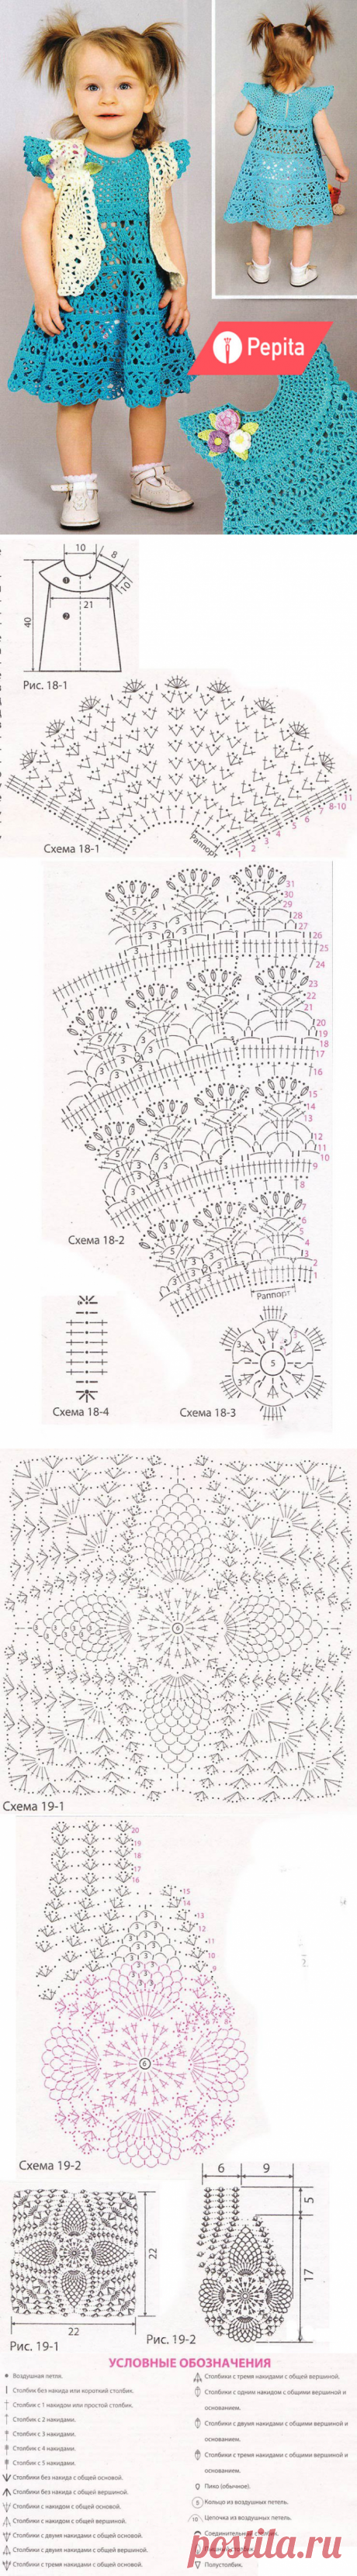 Болеро и платье для девочки по схеме вязания крючком - Портал рукоделия и моды